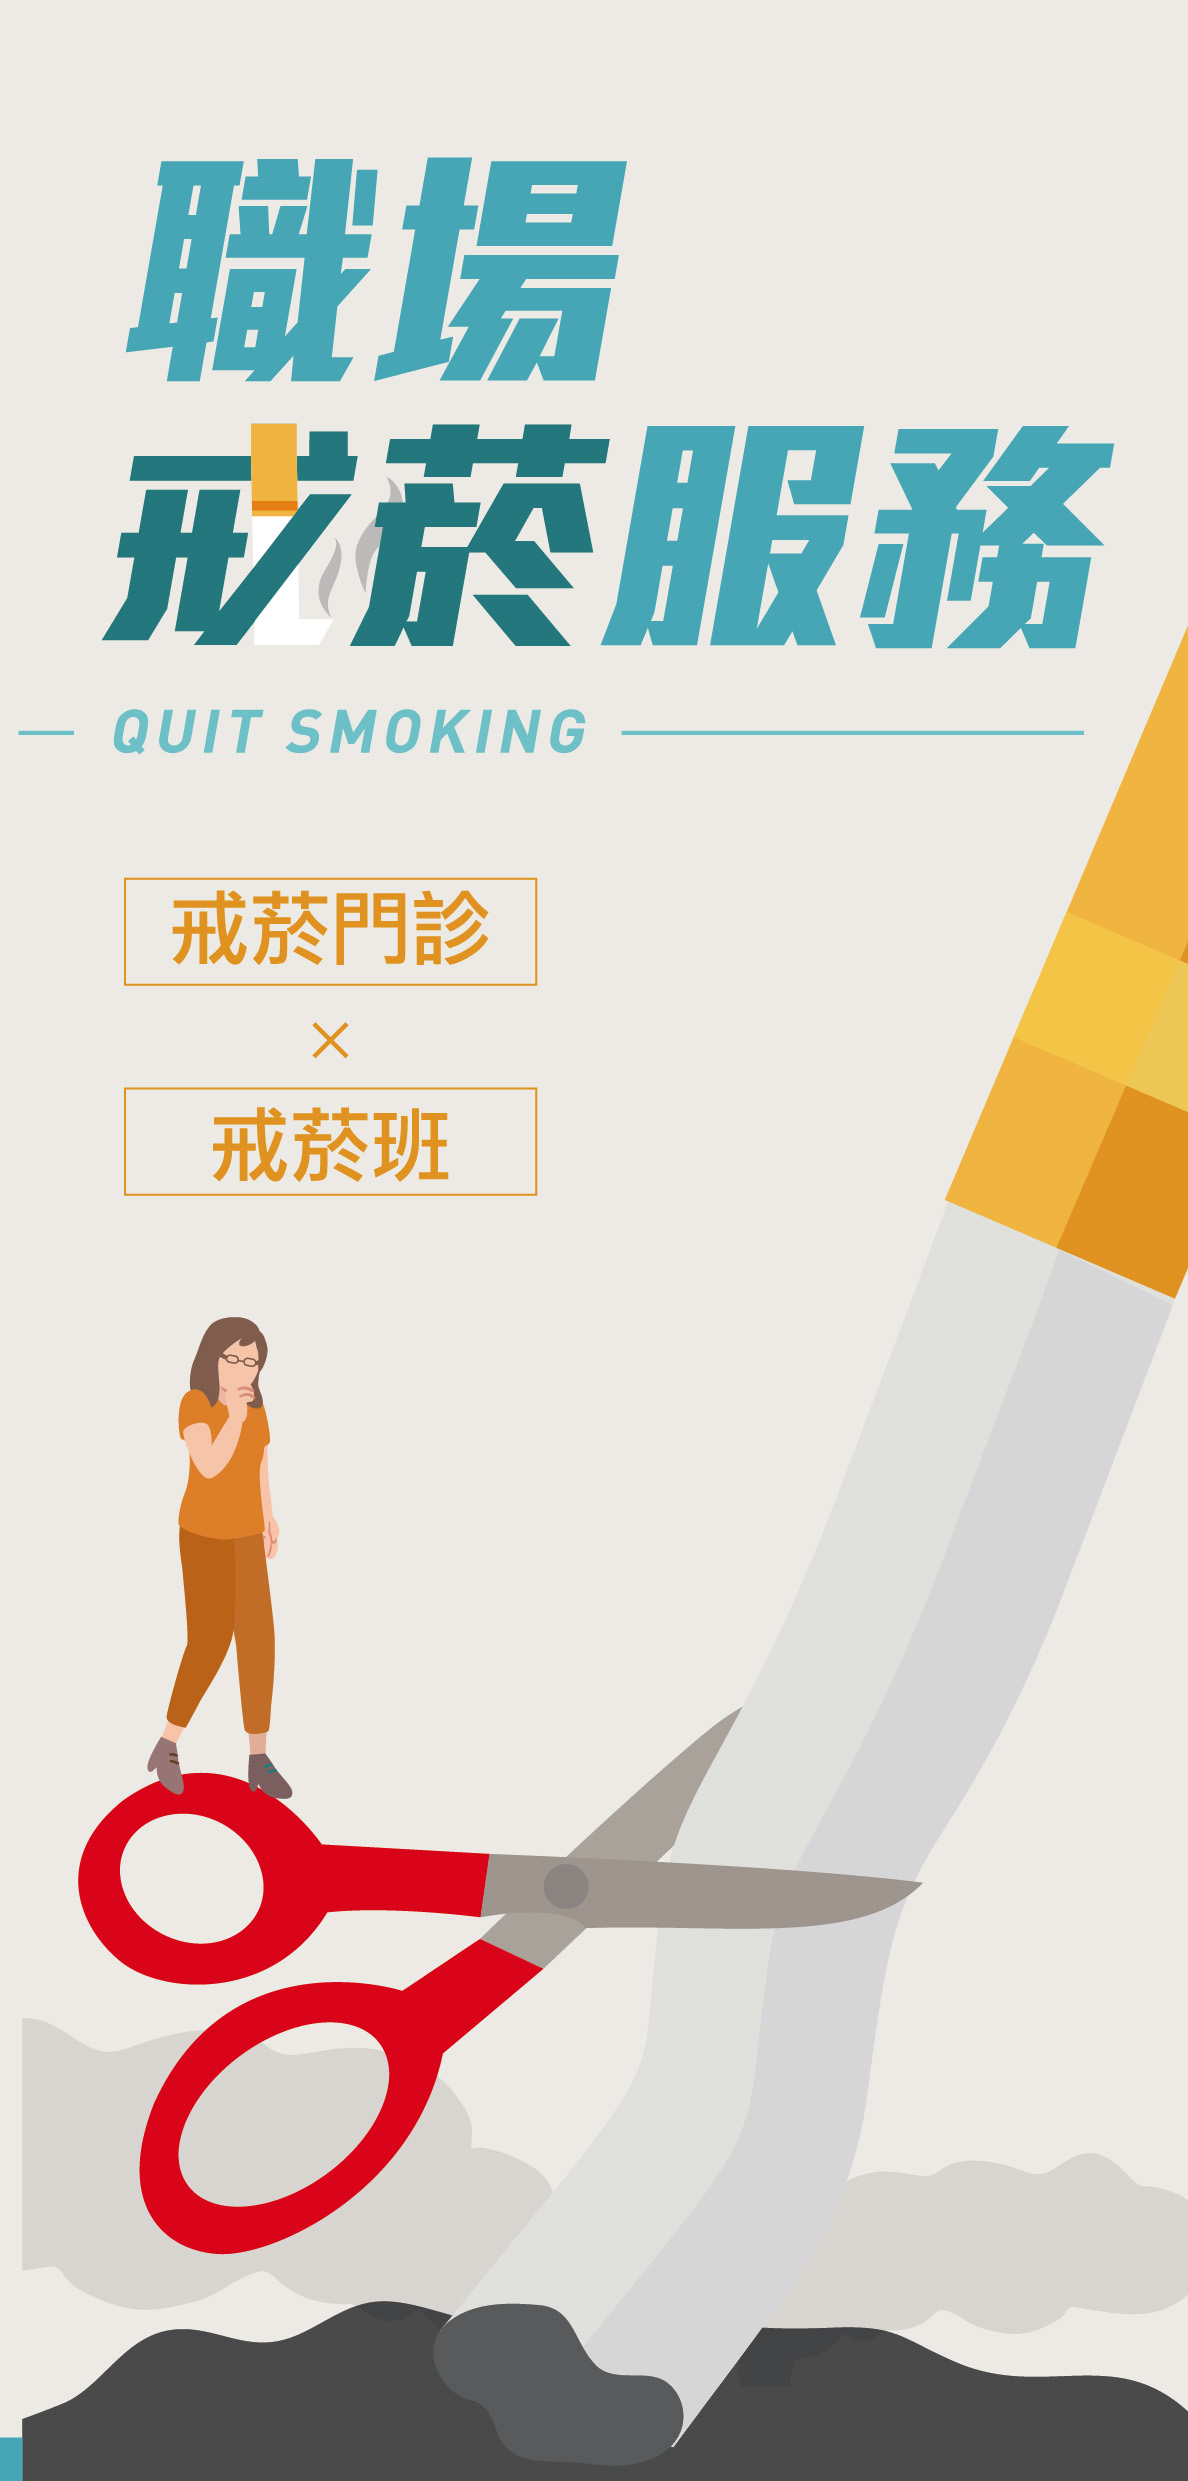 職場戒菸服務(折頁)